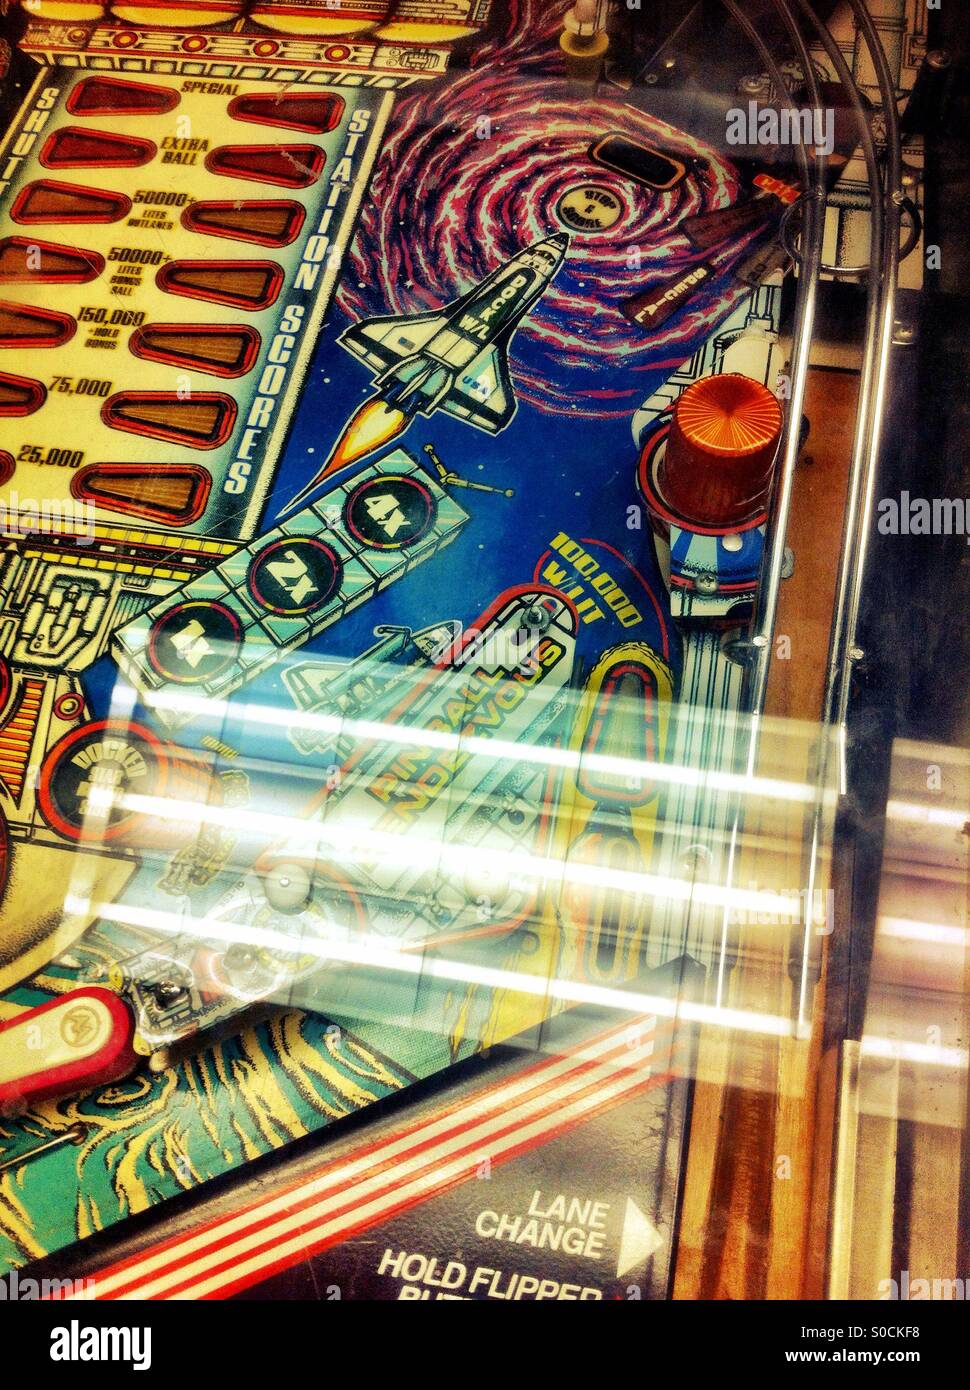 Pinball machine Stock Photo